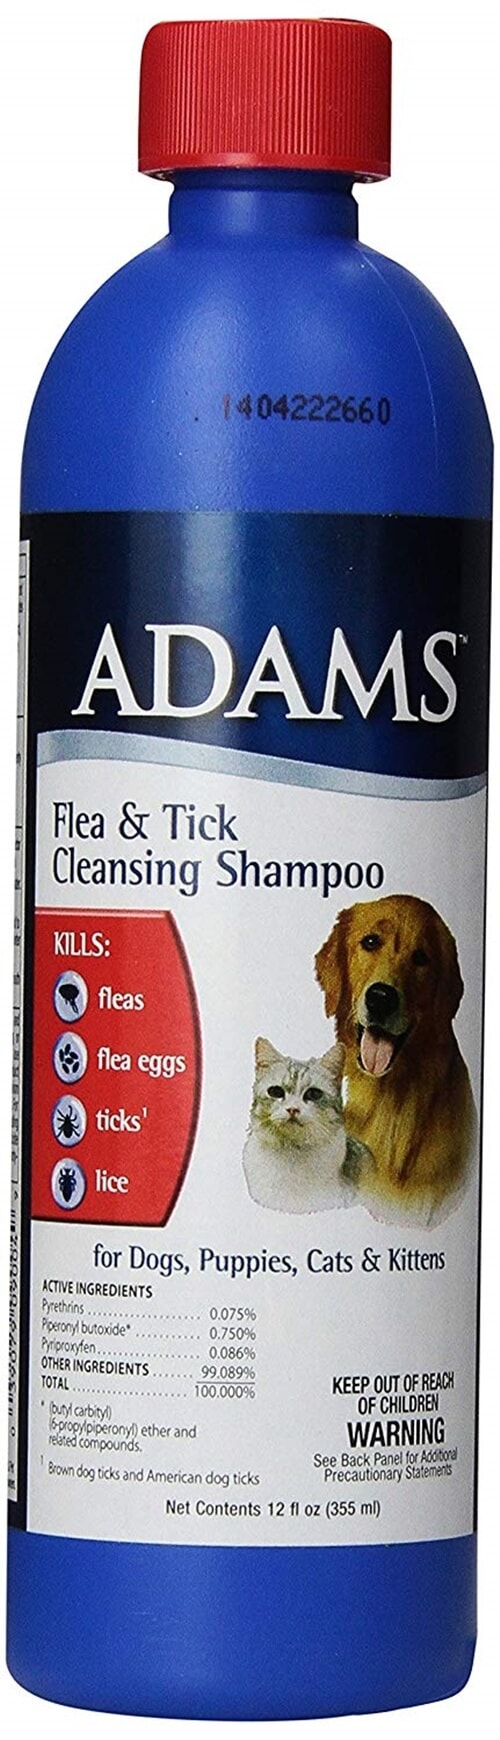 triple action flea and tick shampoo